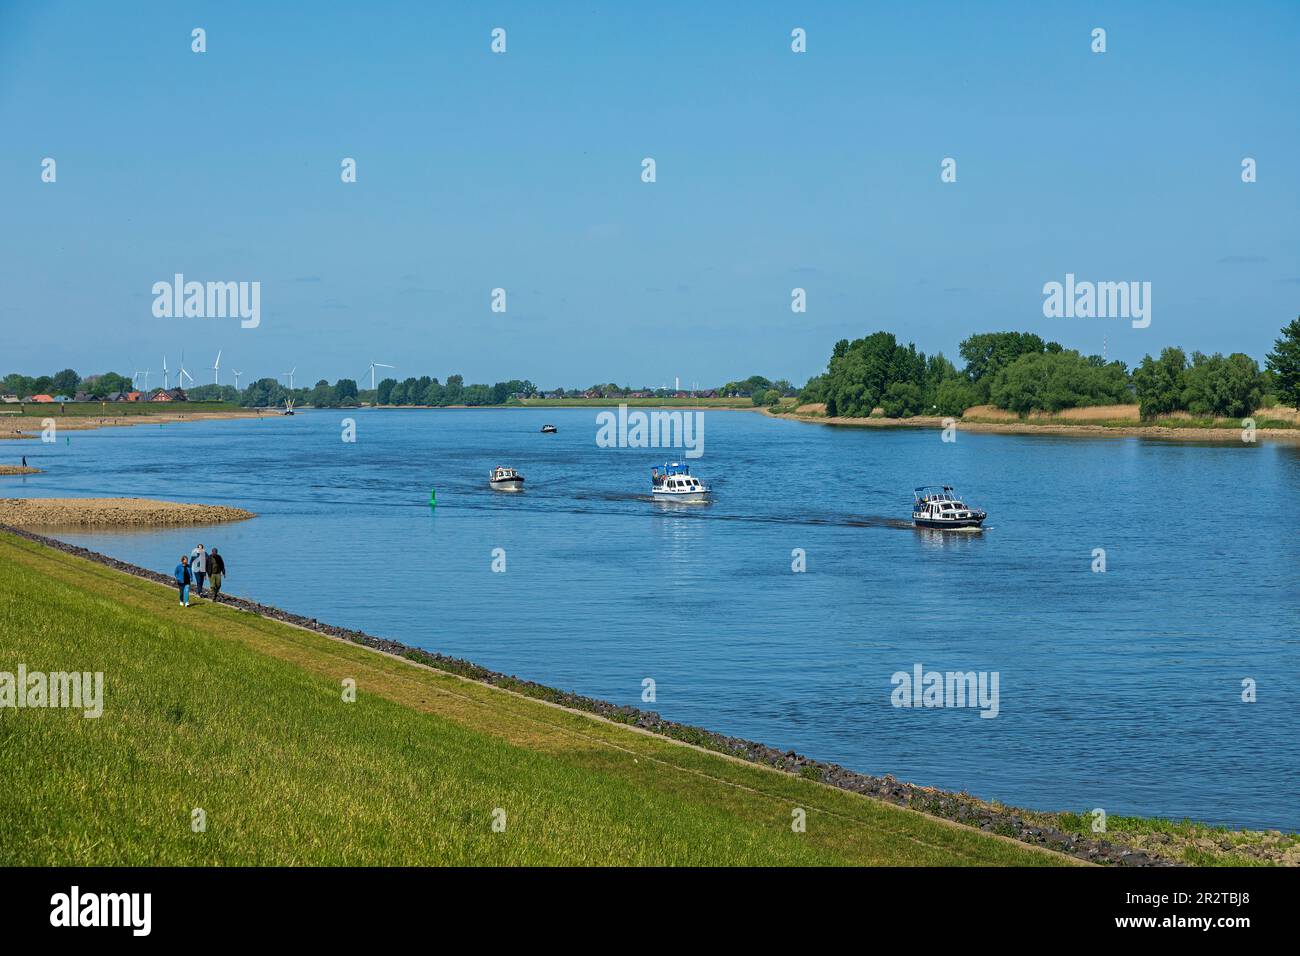 Personnes, bateaux, groin, rivière Elbe, Hoopte, Winsen (Luhe), Basse-Saxe, de l'autre côté de la rivière se trouve Zollenspieker, Hambourg, Allemagne Banque D'Images